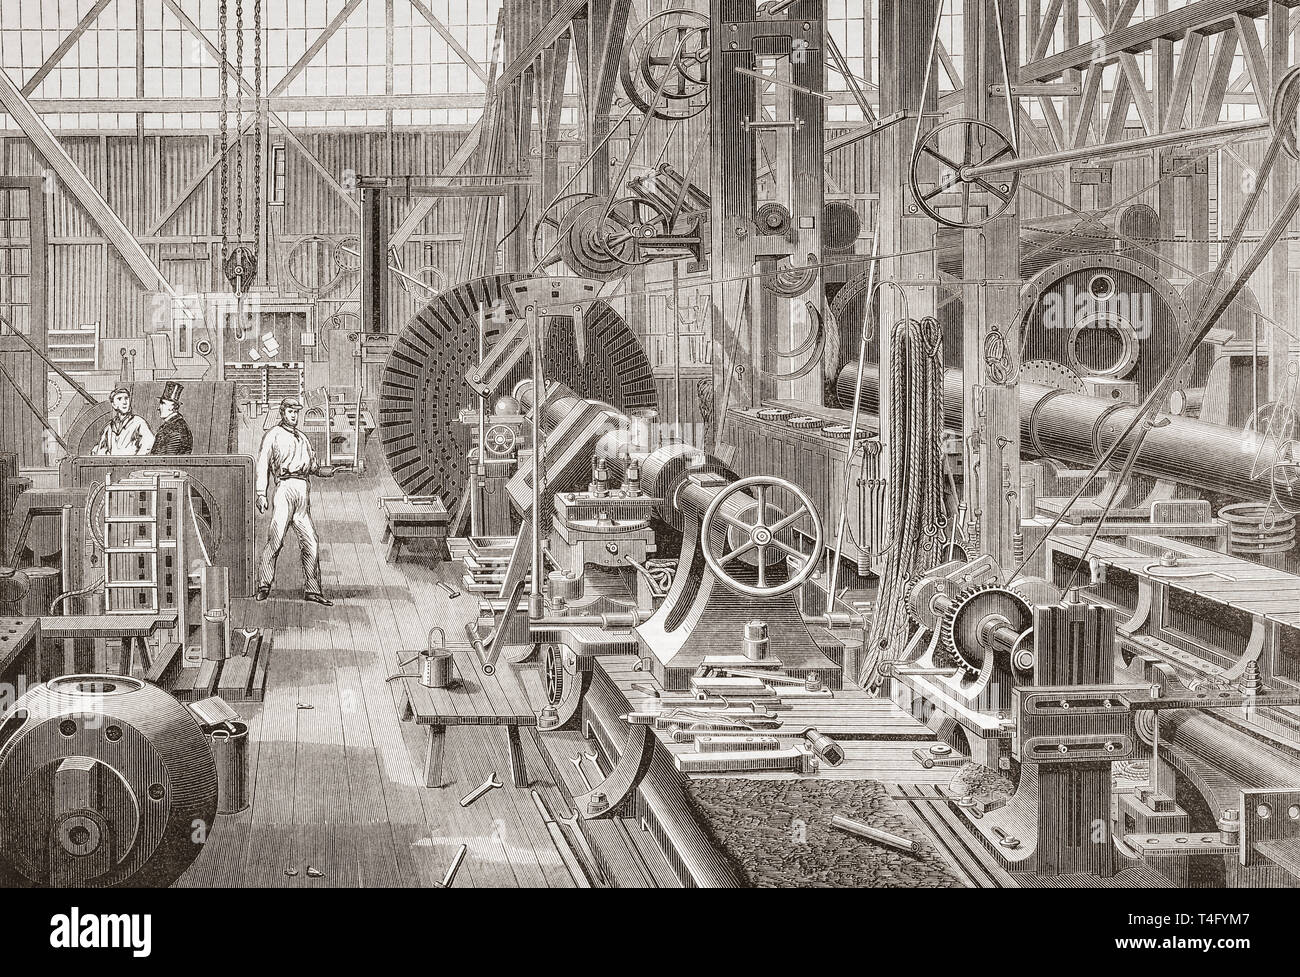 Penn motore marino fabbrica, Greenwich, Londra, Inghilterra del XIX secolo. Girare una manovella assale. Dal Illustrated London News, pubblicato 1865. Foto Stock